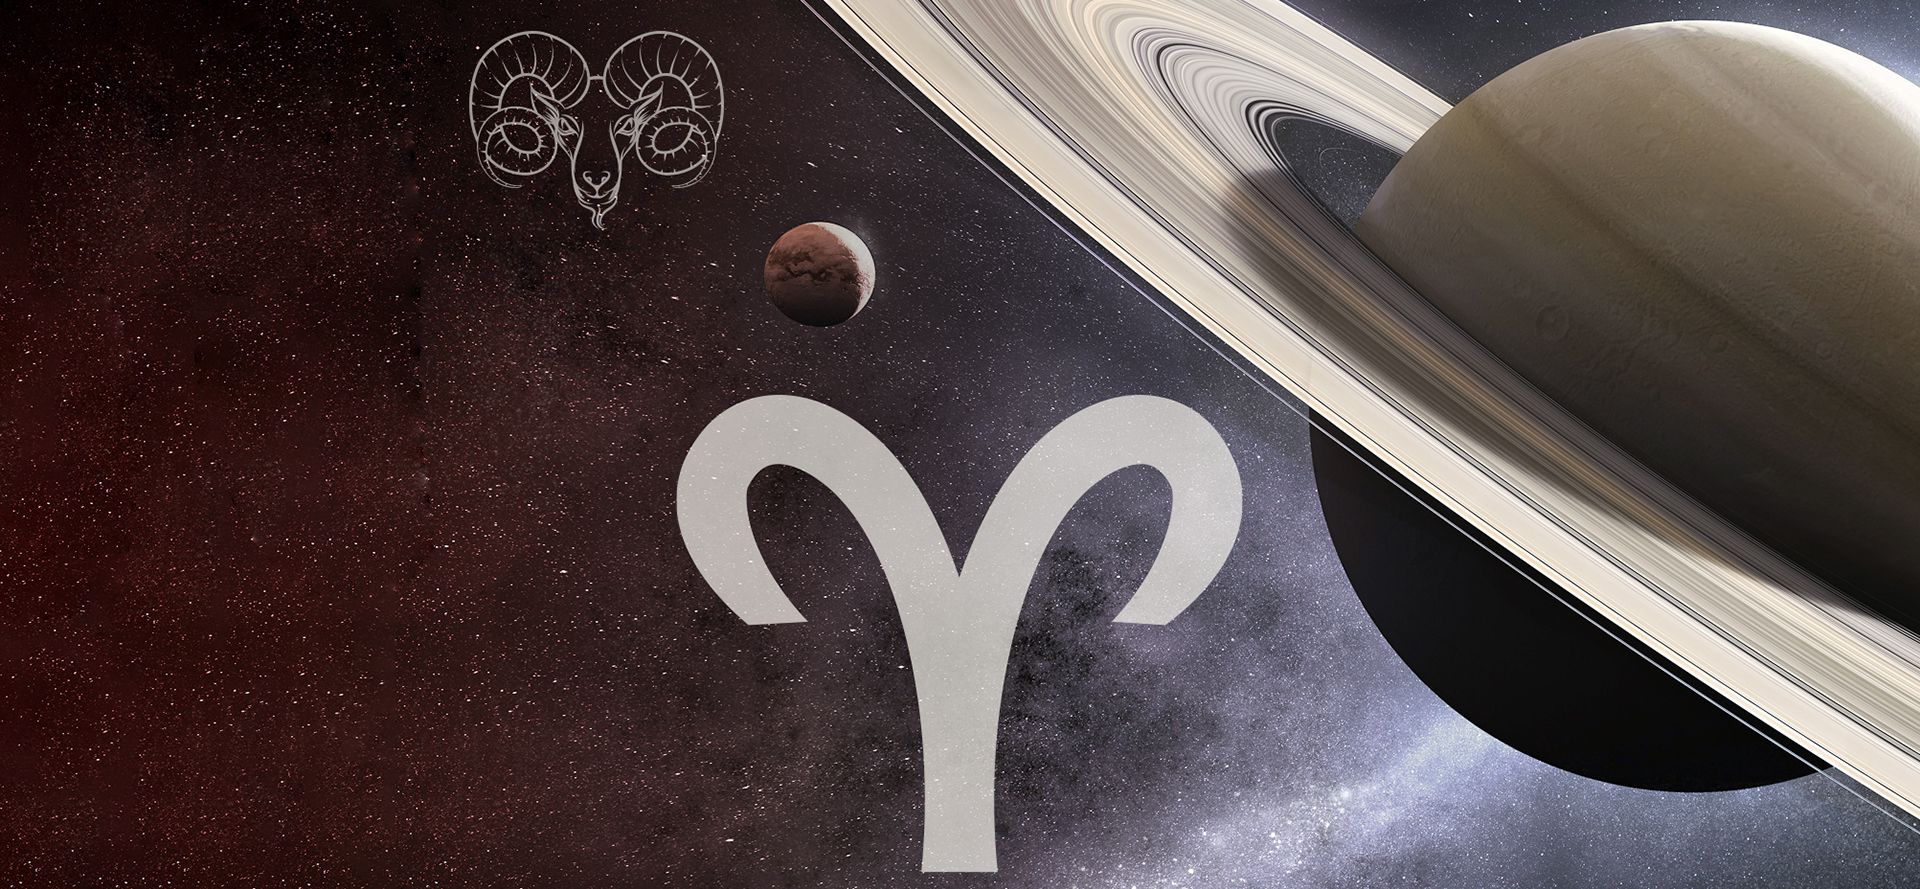 Saturn Aand Aries sign.